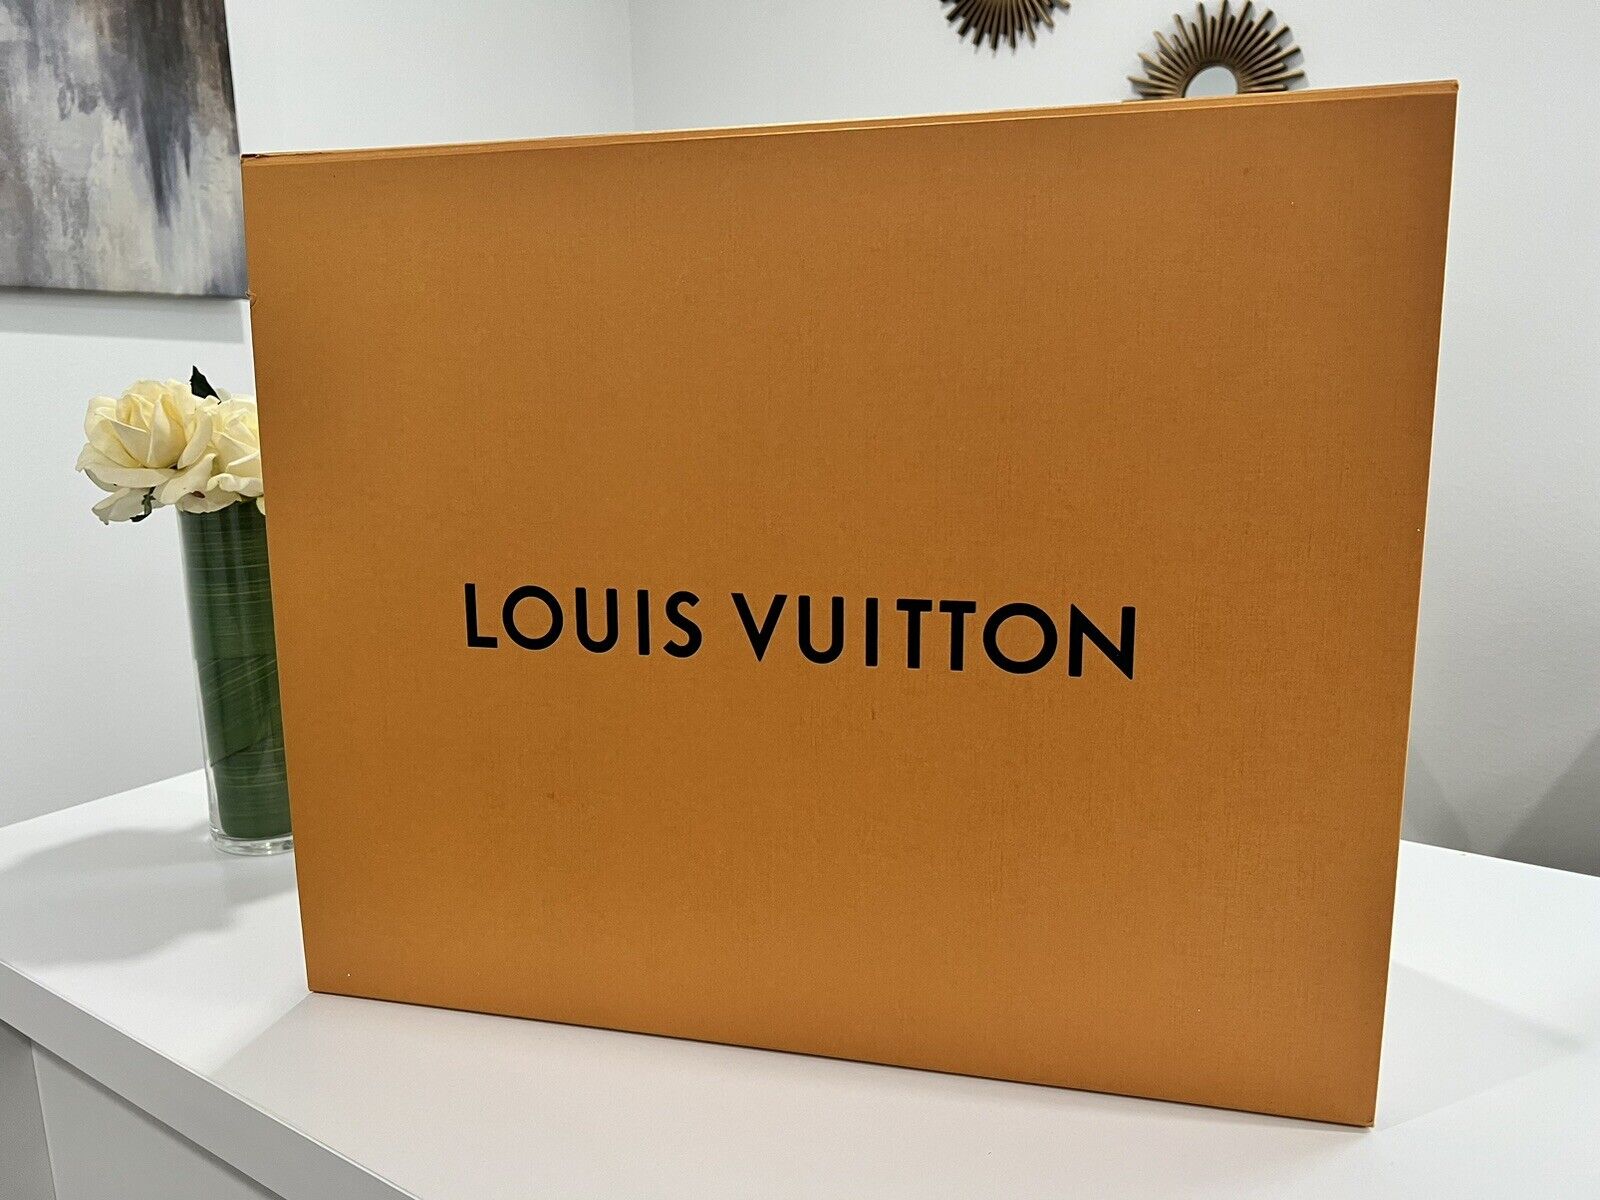 Louis Vuitton Orange big box 15” X 20”